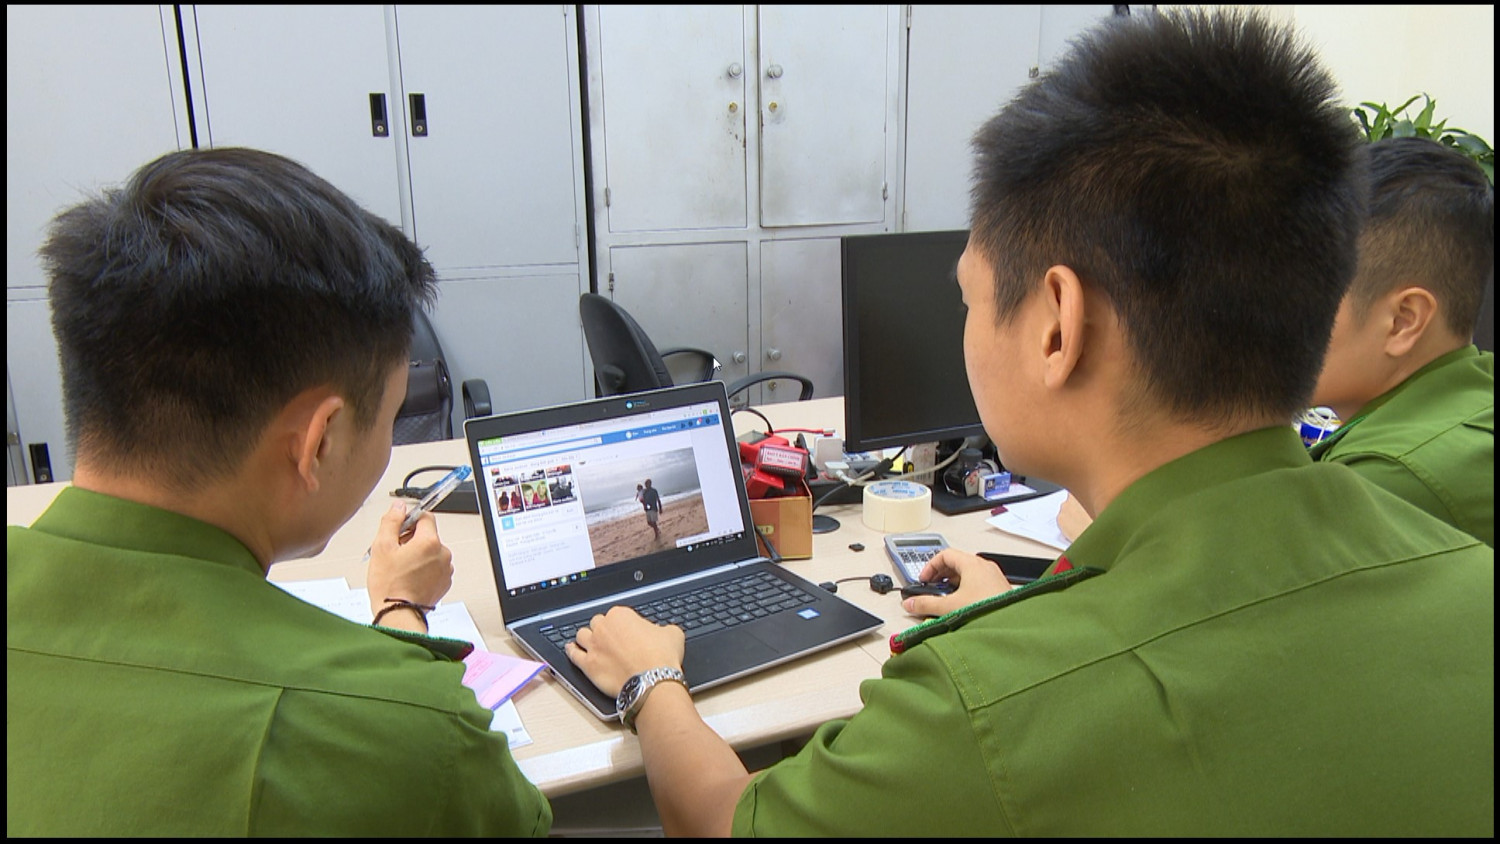 Lực lượng chức năng điều tra hành vi lừa đảo qua mạng (Ảnh: Công an tỉnh Quảng Ninh)